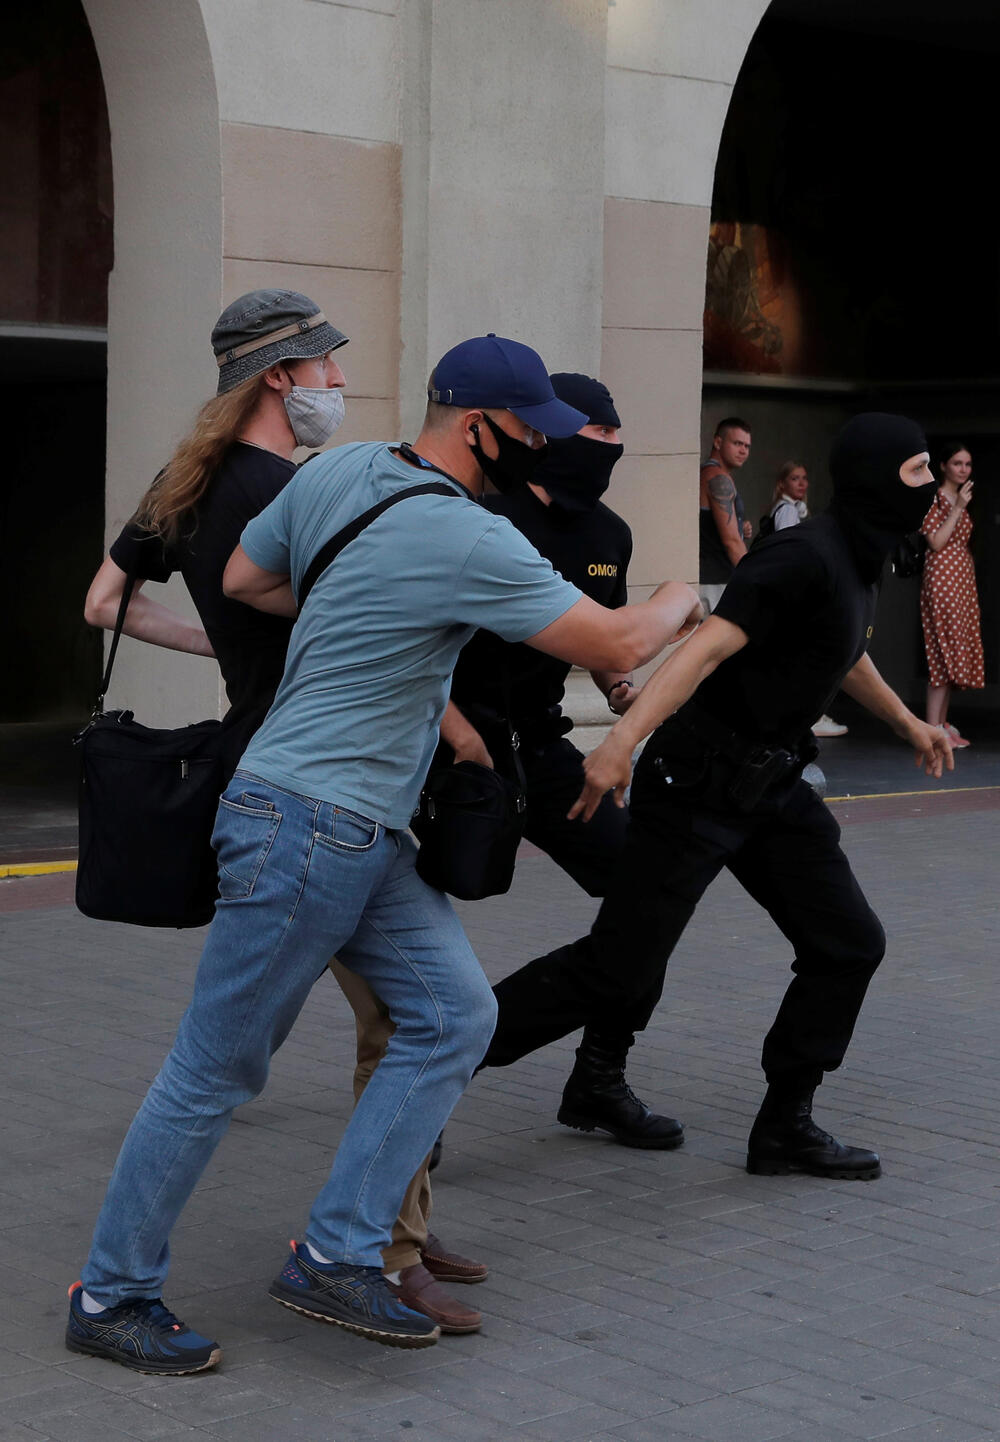  antivladinim protestima prije izbora uhapšeno oko 1.300 demonstranata